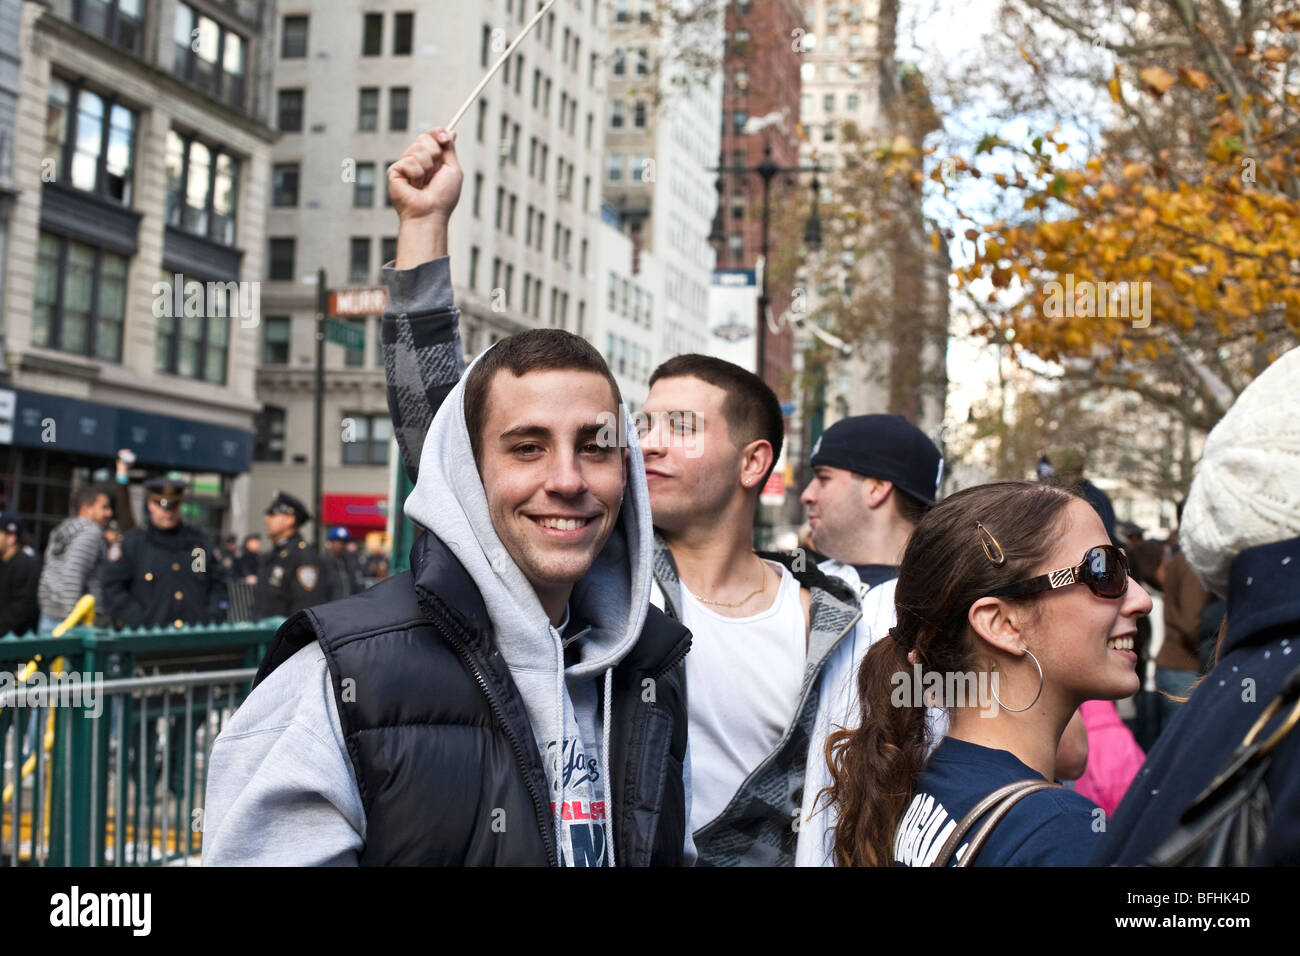 Felice entusiasta eccitato i giovani tifosi festeggiare sul lower Broadway Manhattan dopo gli Yankees 2009 World Series victory parade Foto Stock